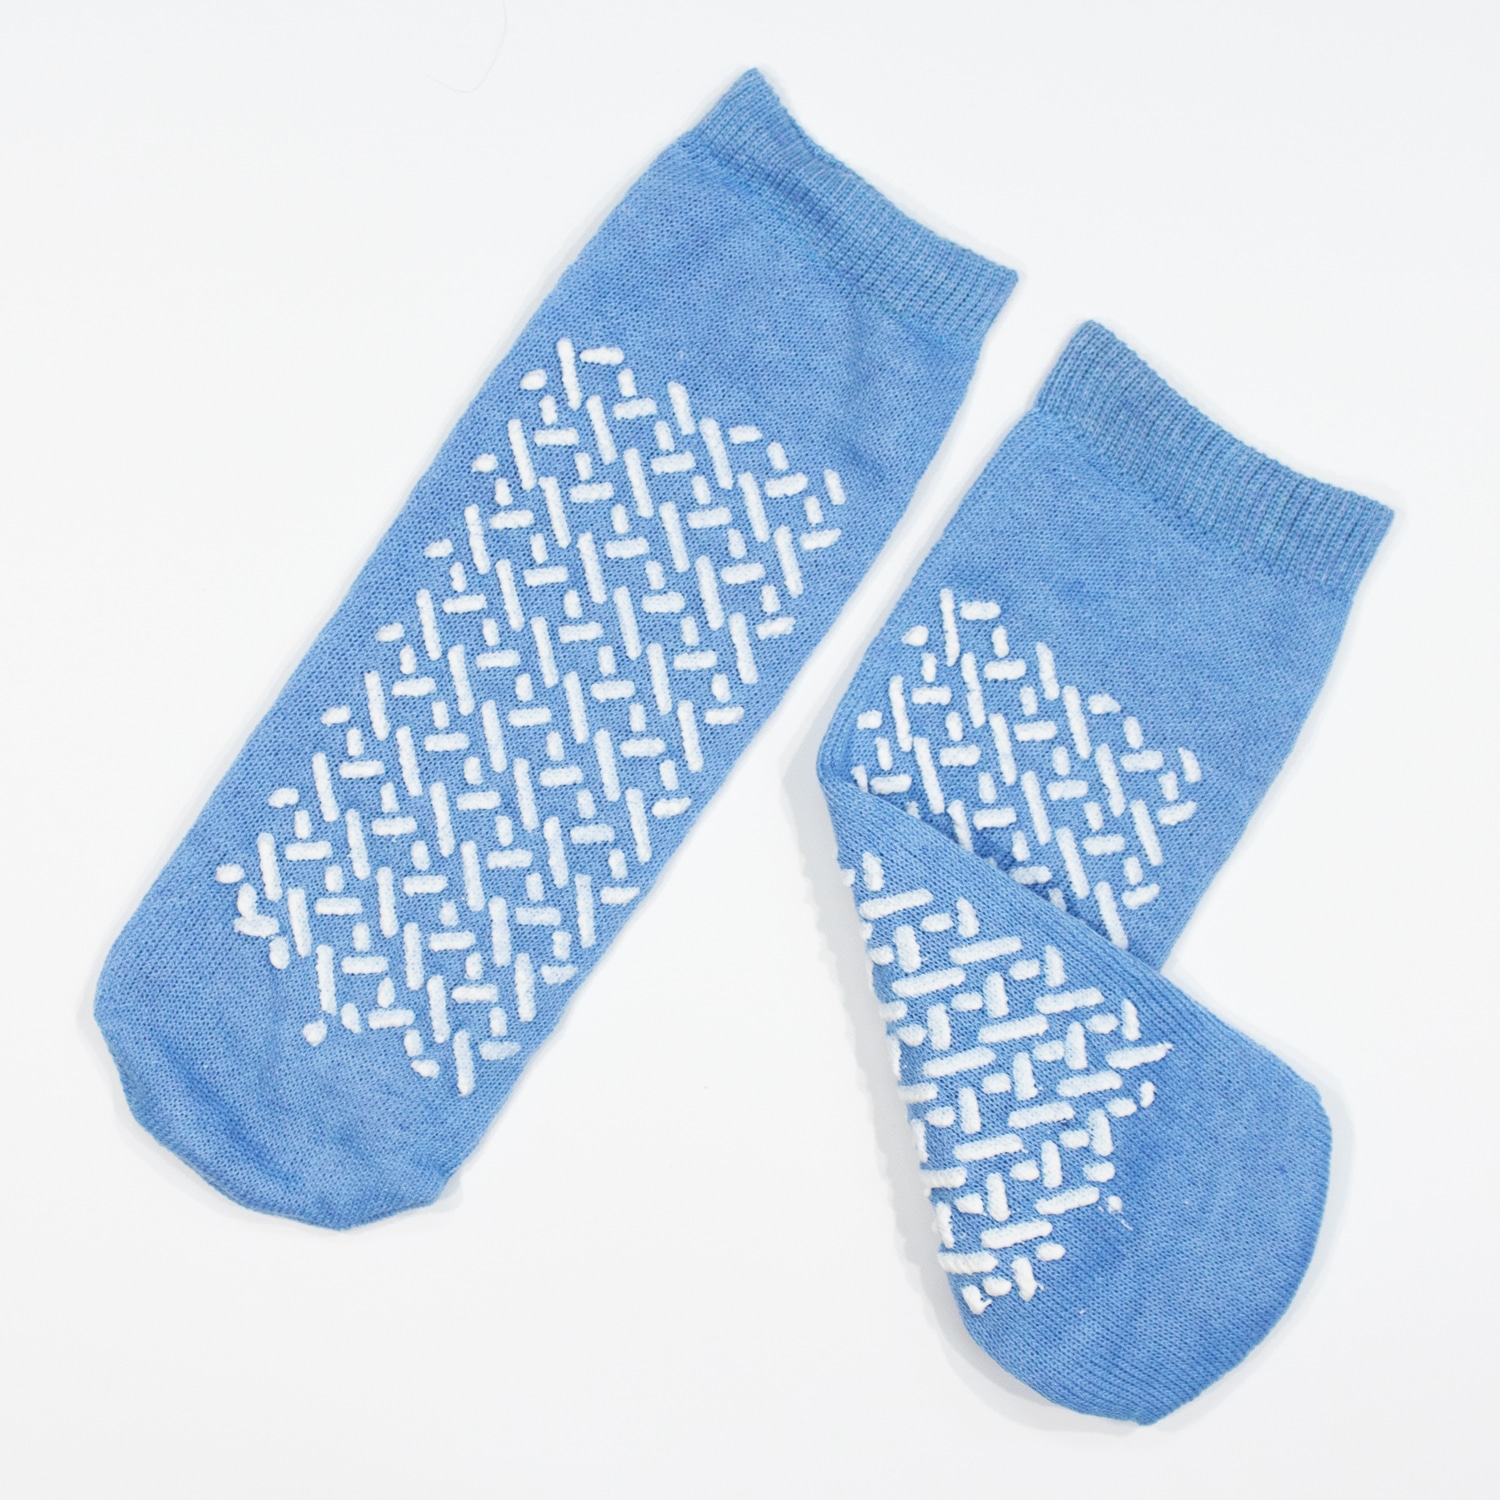 Double Sided Slipper Socks, Non Skid Hospital Travel Slipper Socks L, Sky  Blue #2192 - BM Global Supply Corporation